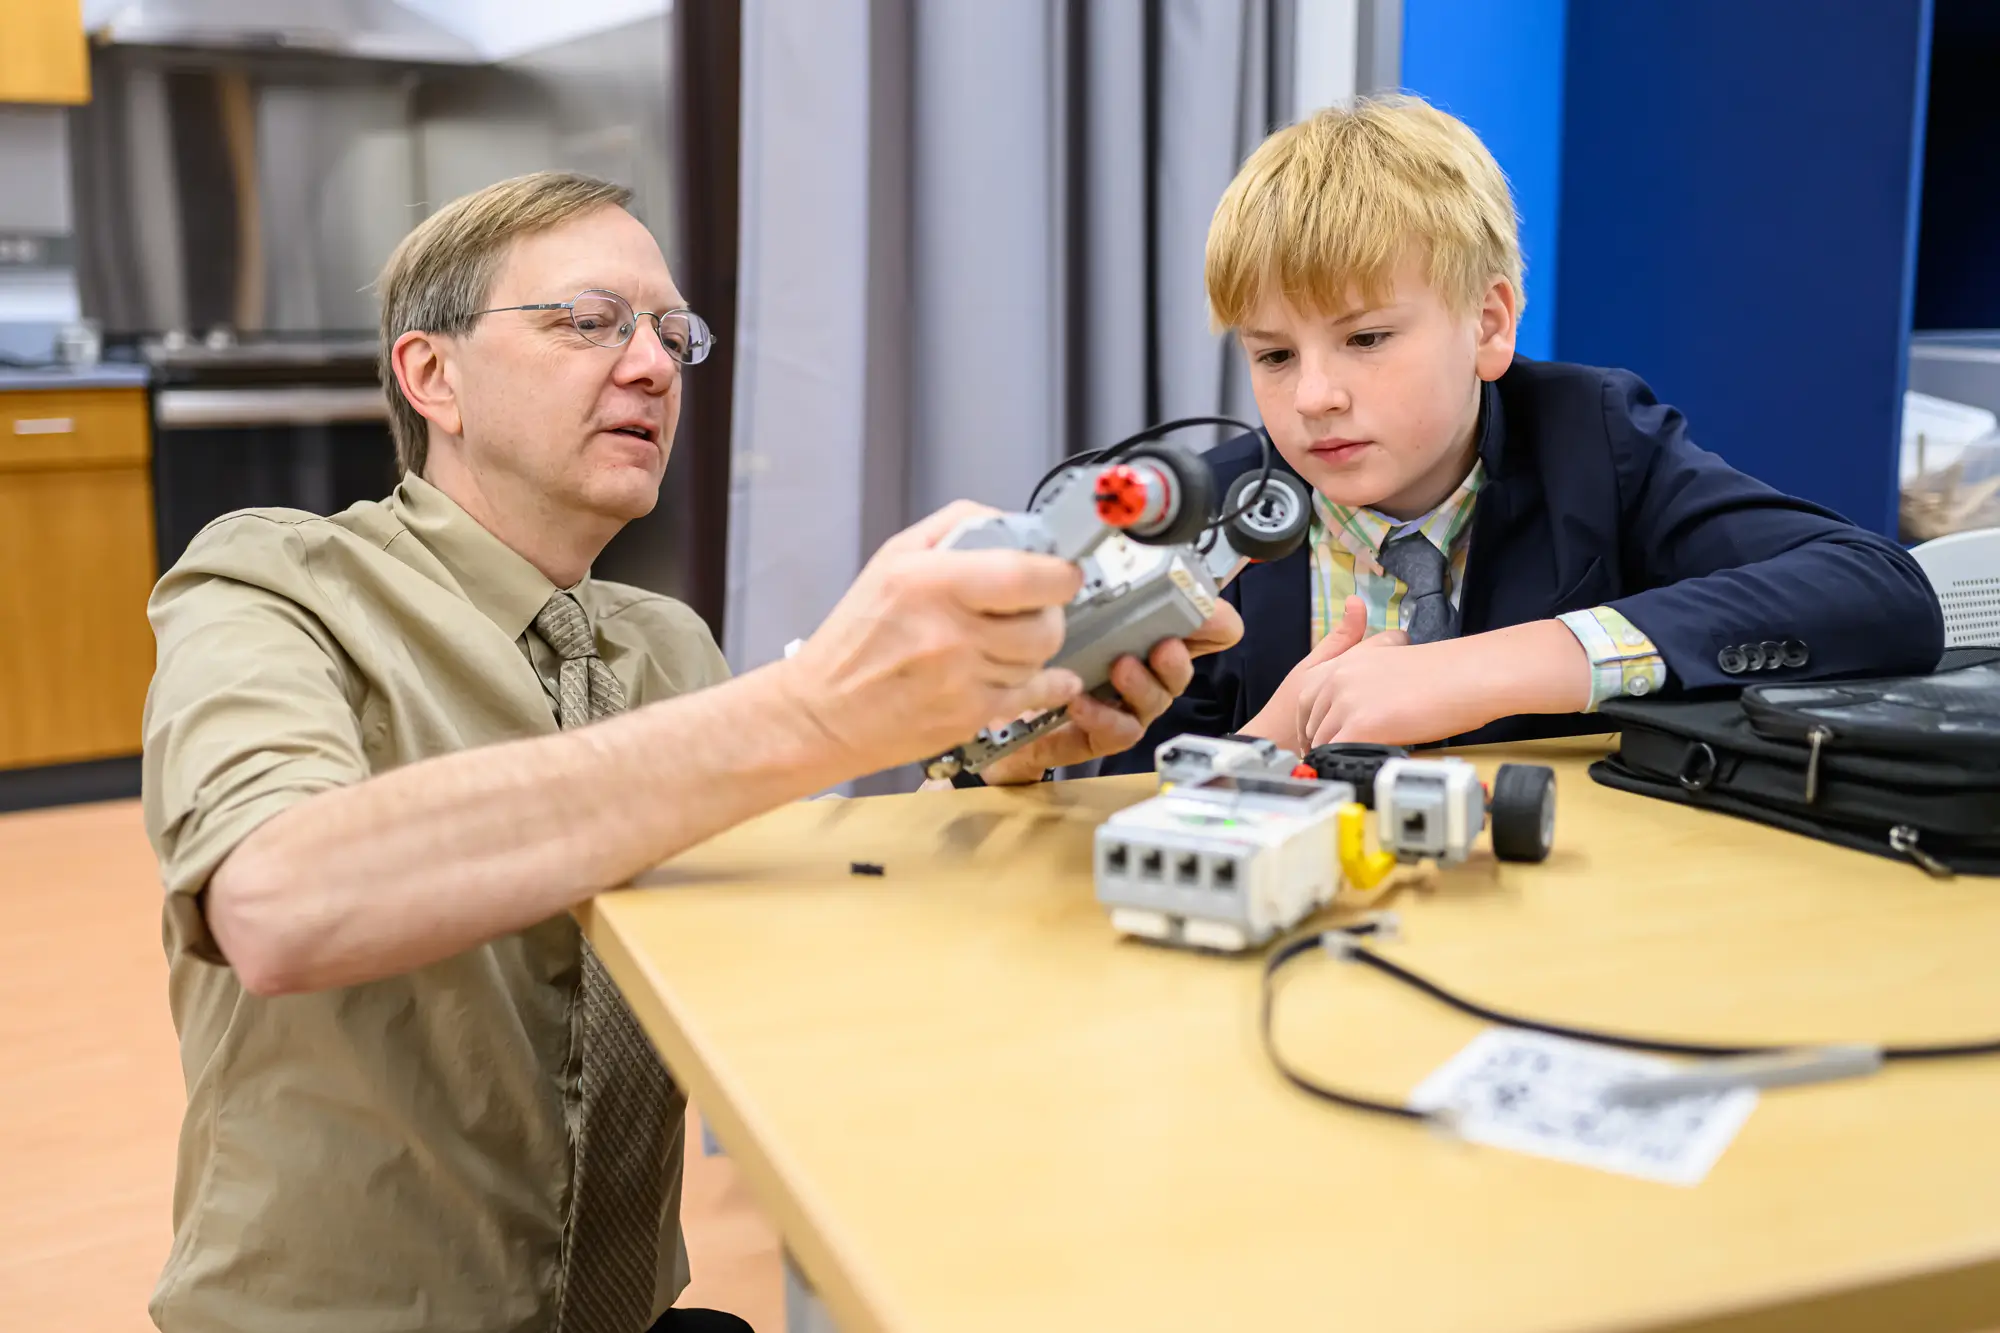 Науковий Боб допомагає учневі середньої школи з робототехнічним проектомВчитель-чоловік допомагає учневі з науковим проектом